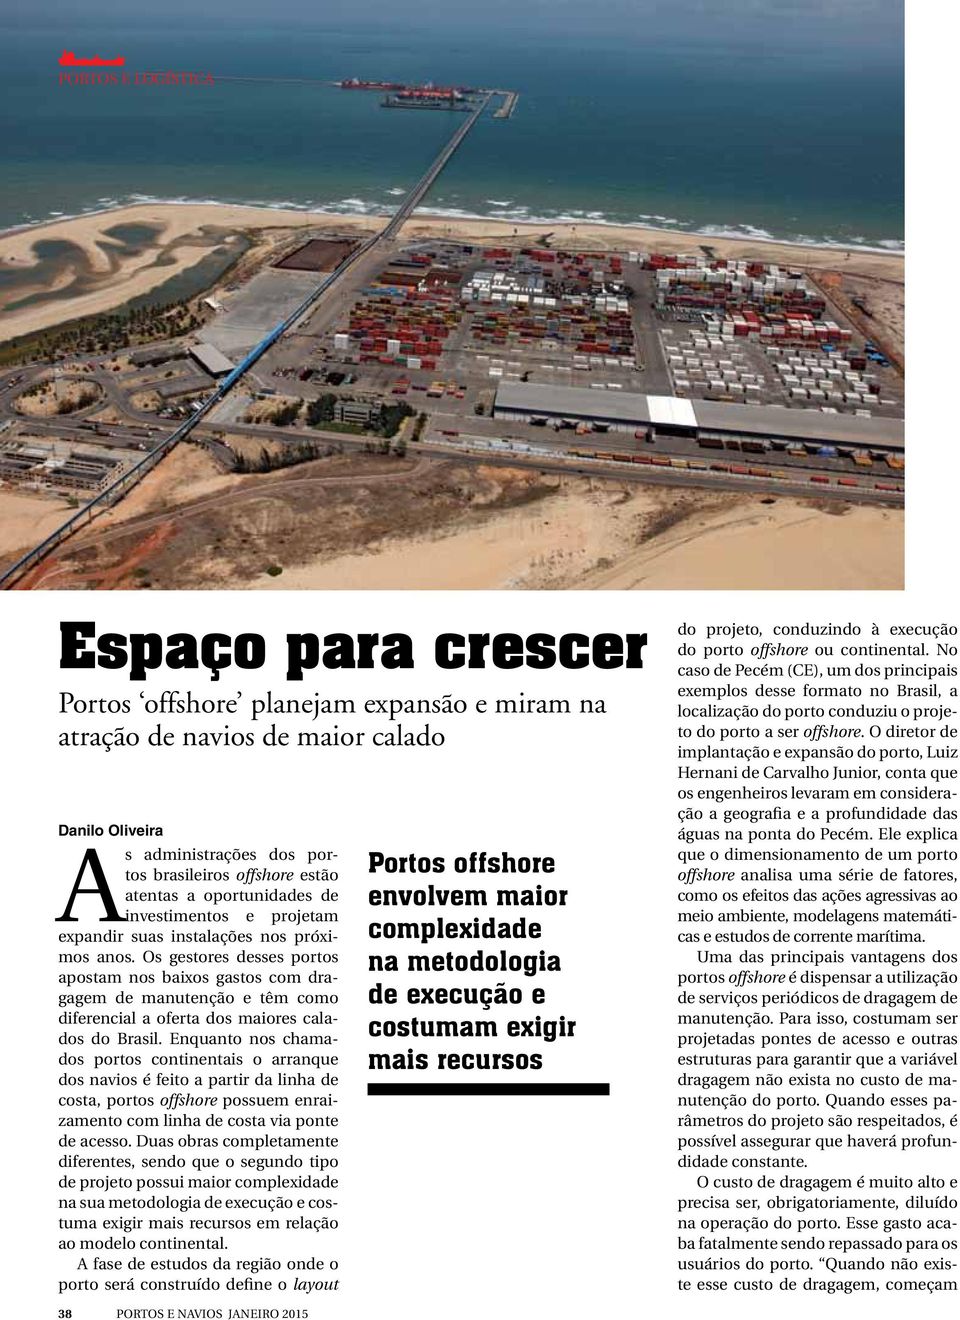 Os gestores desses portos apostam nos baixos gastos com dragagem de manutenção e têm como diferencial a oferta dos maiores calados do Brasil.